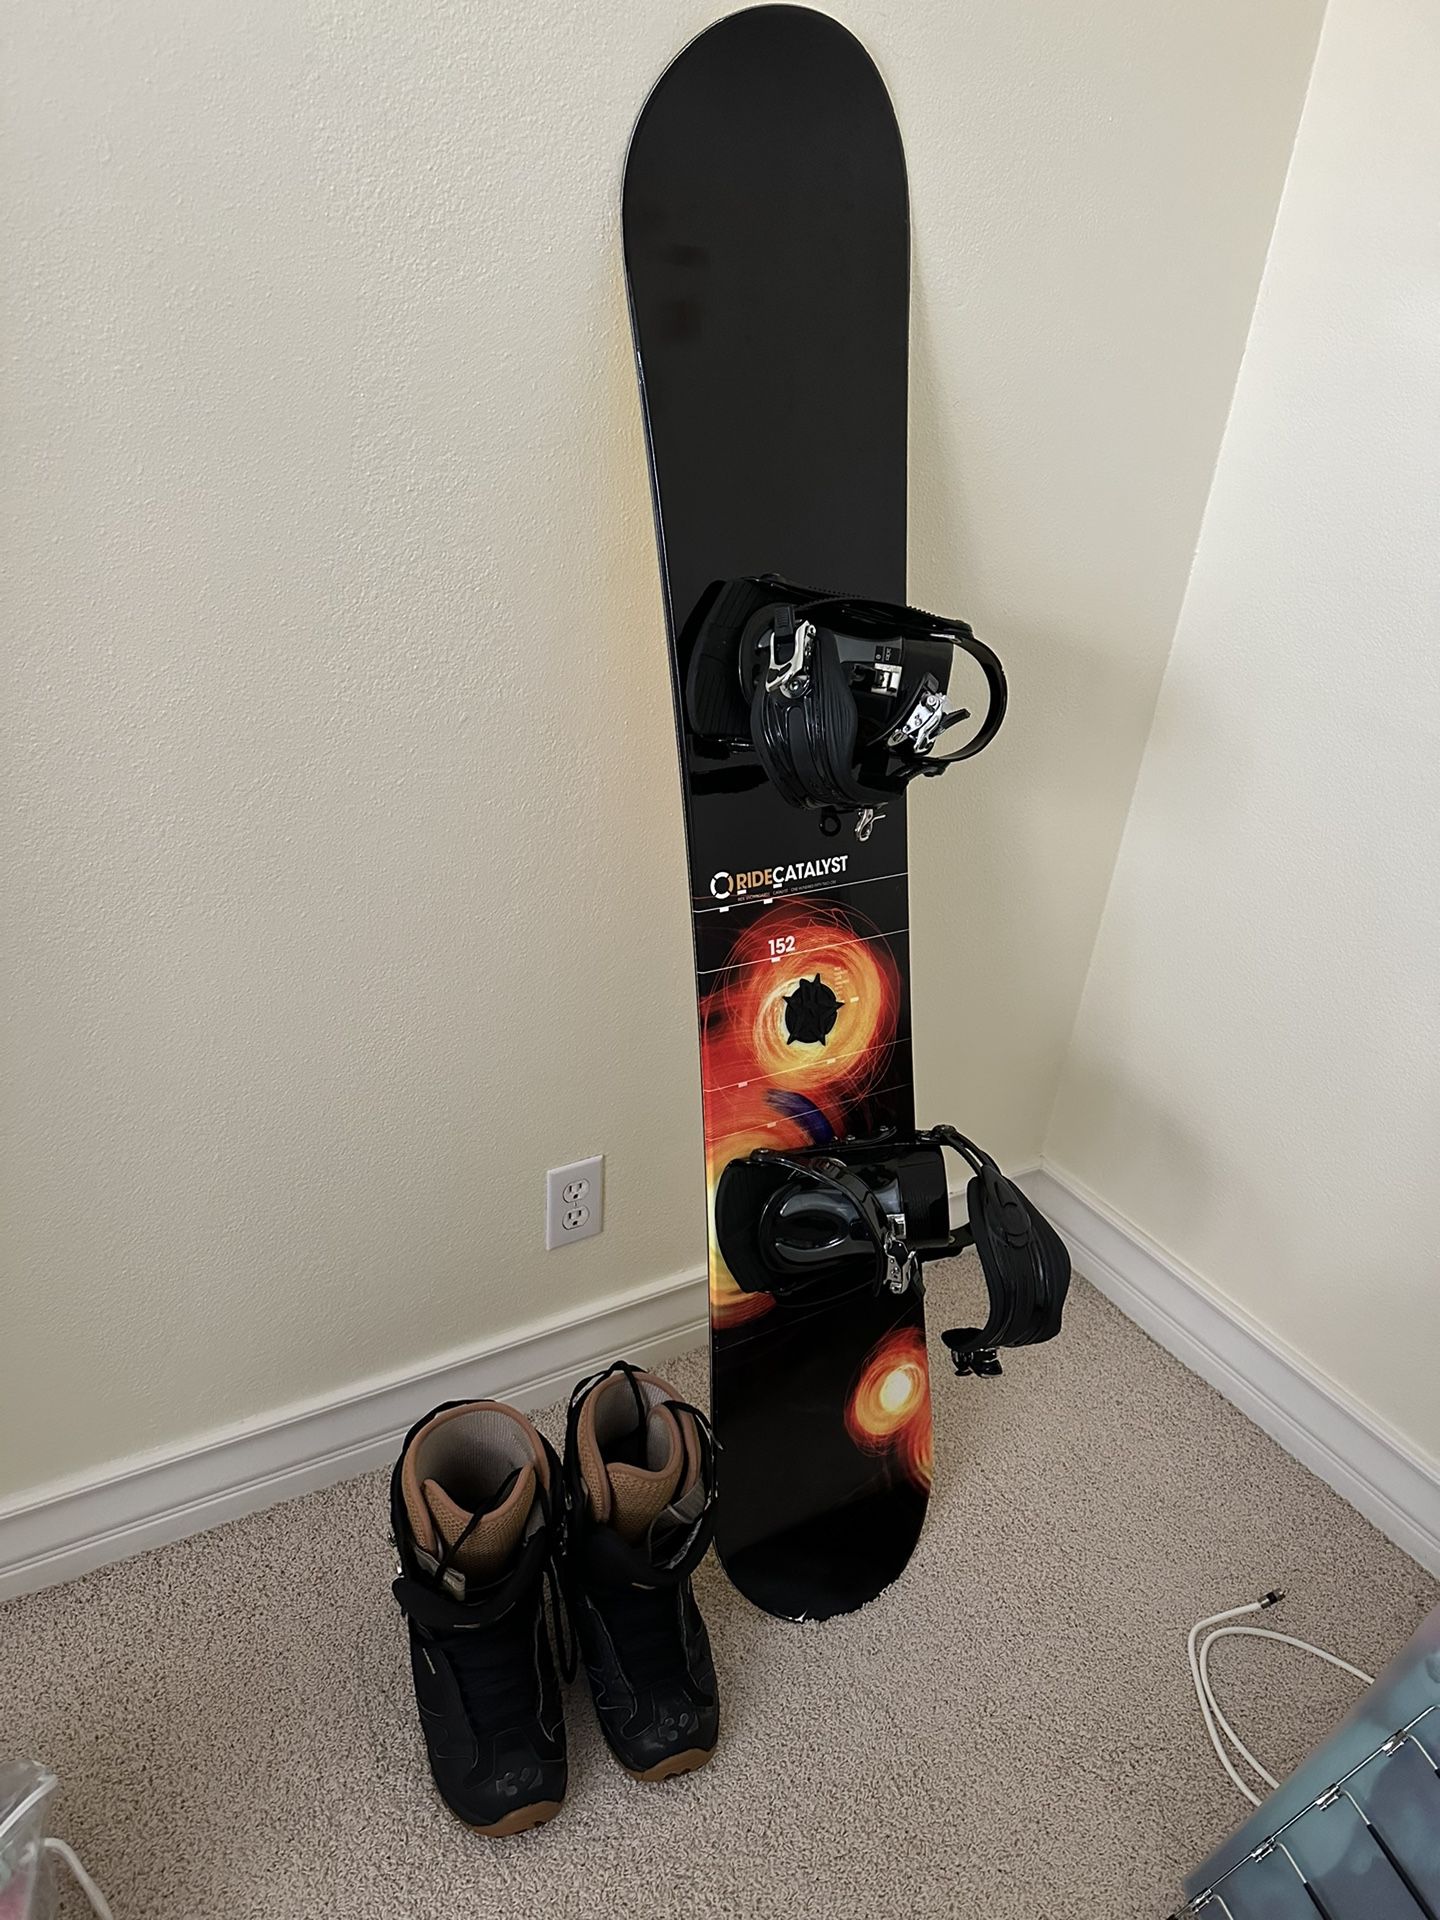 Burton Snowboard And Accessories 